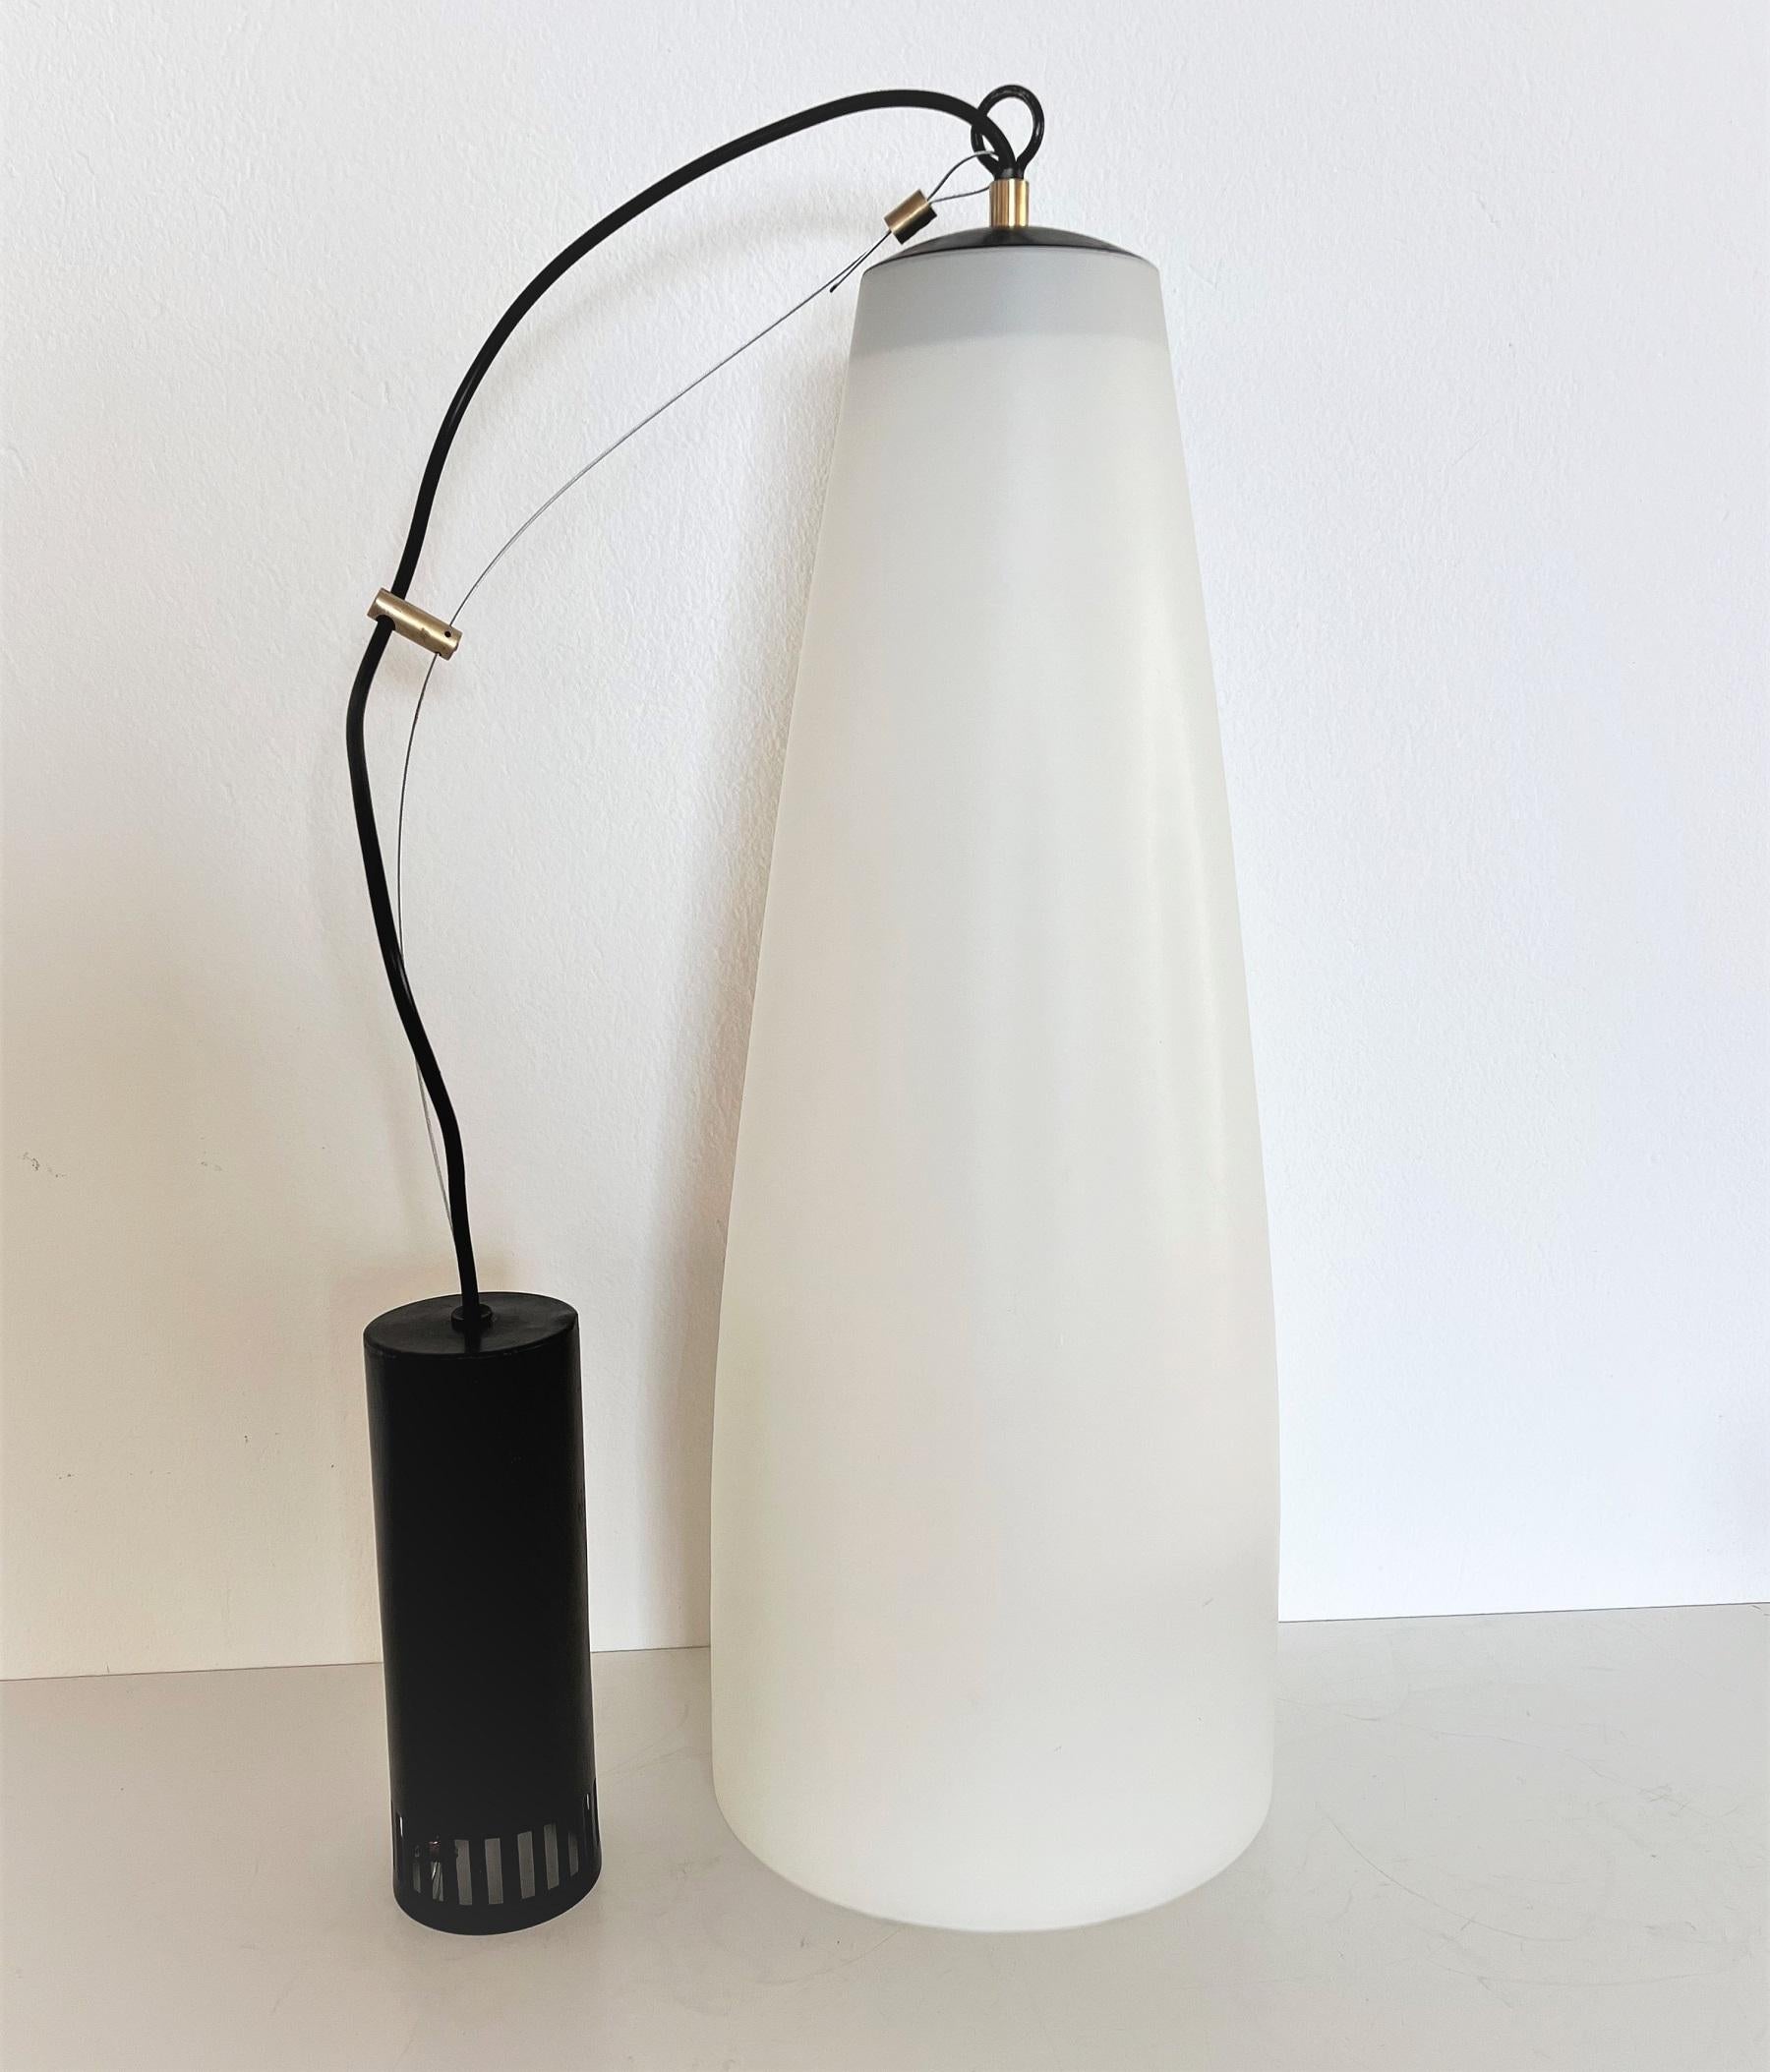 Italian Midcentury Extra Long Pendant Light in Milky White Glass, 1970s For Sale 2